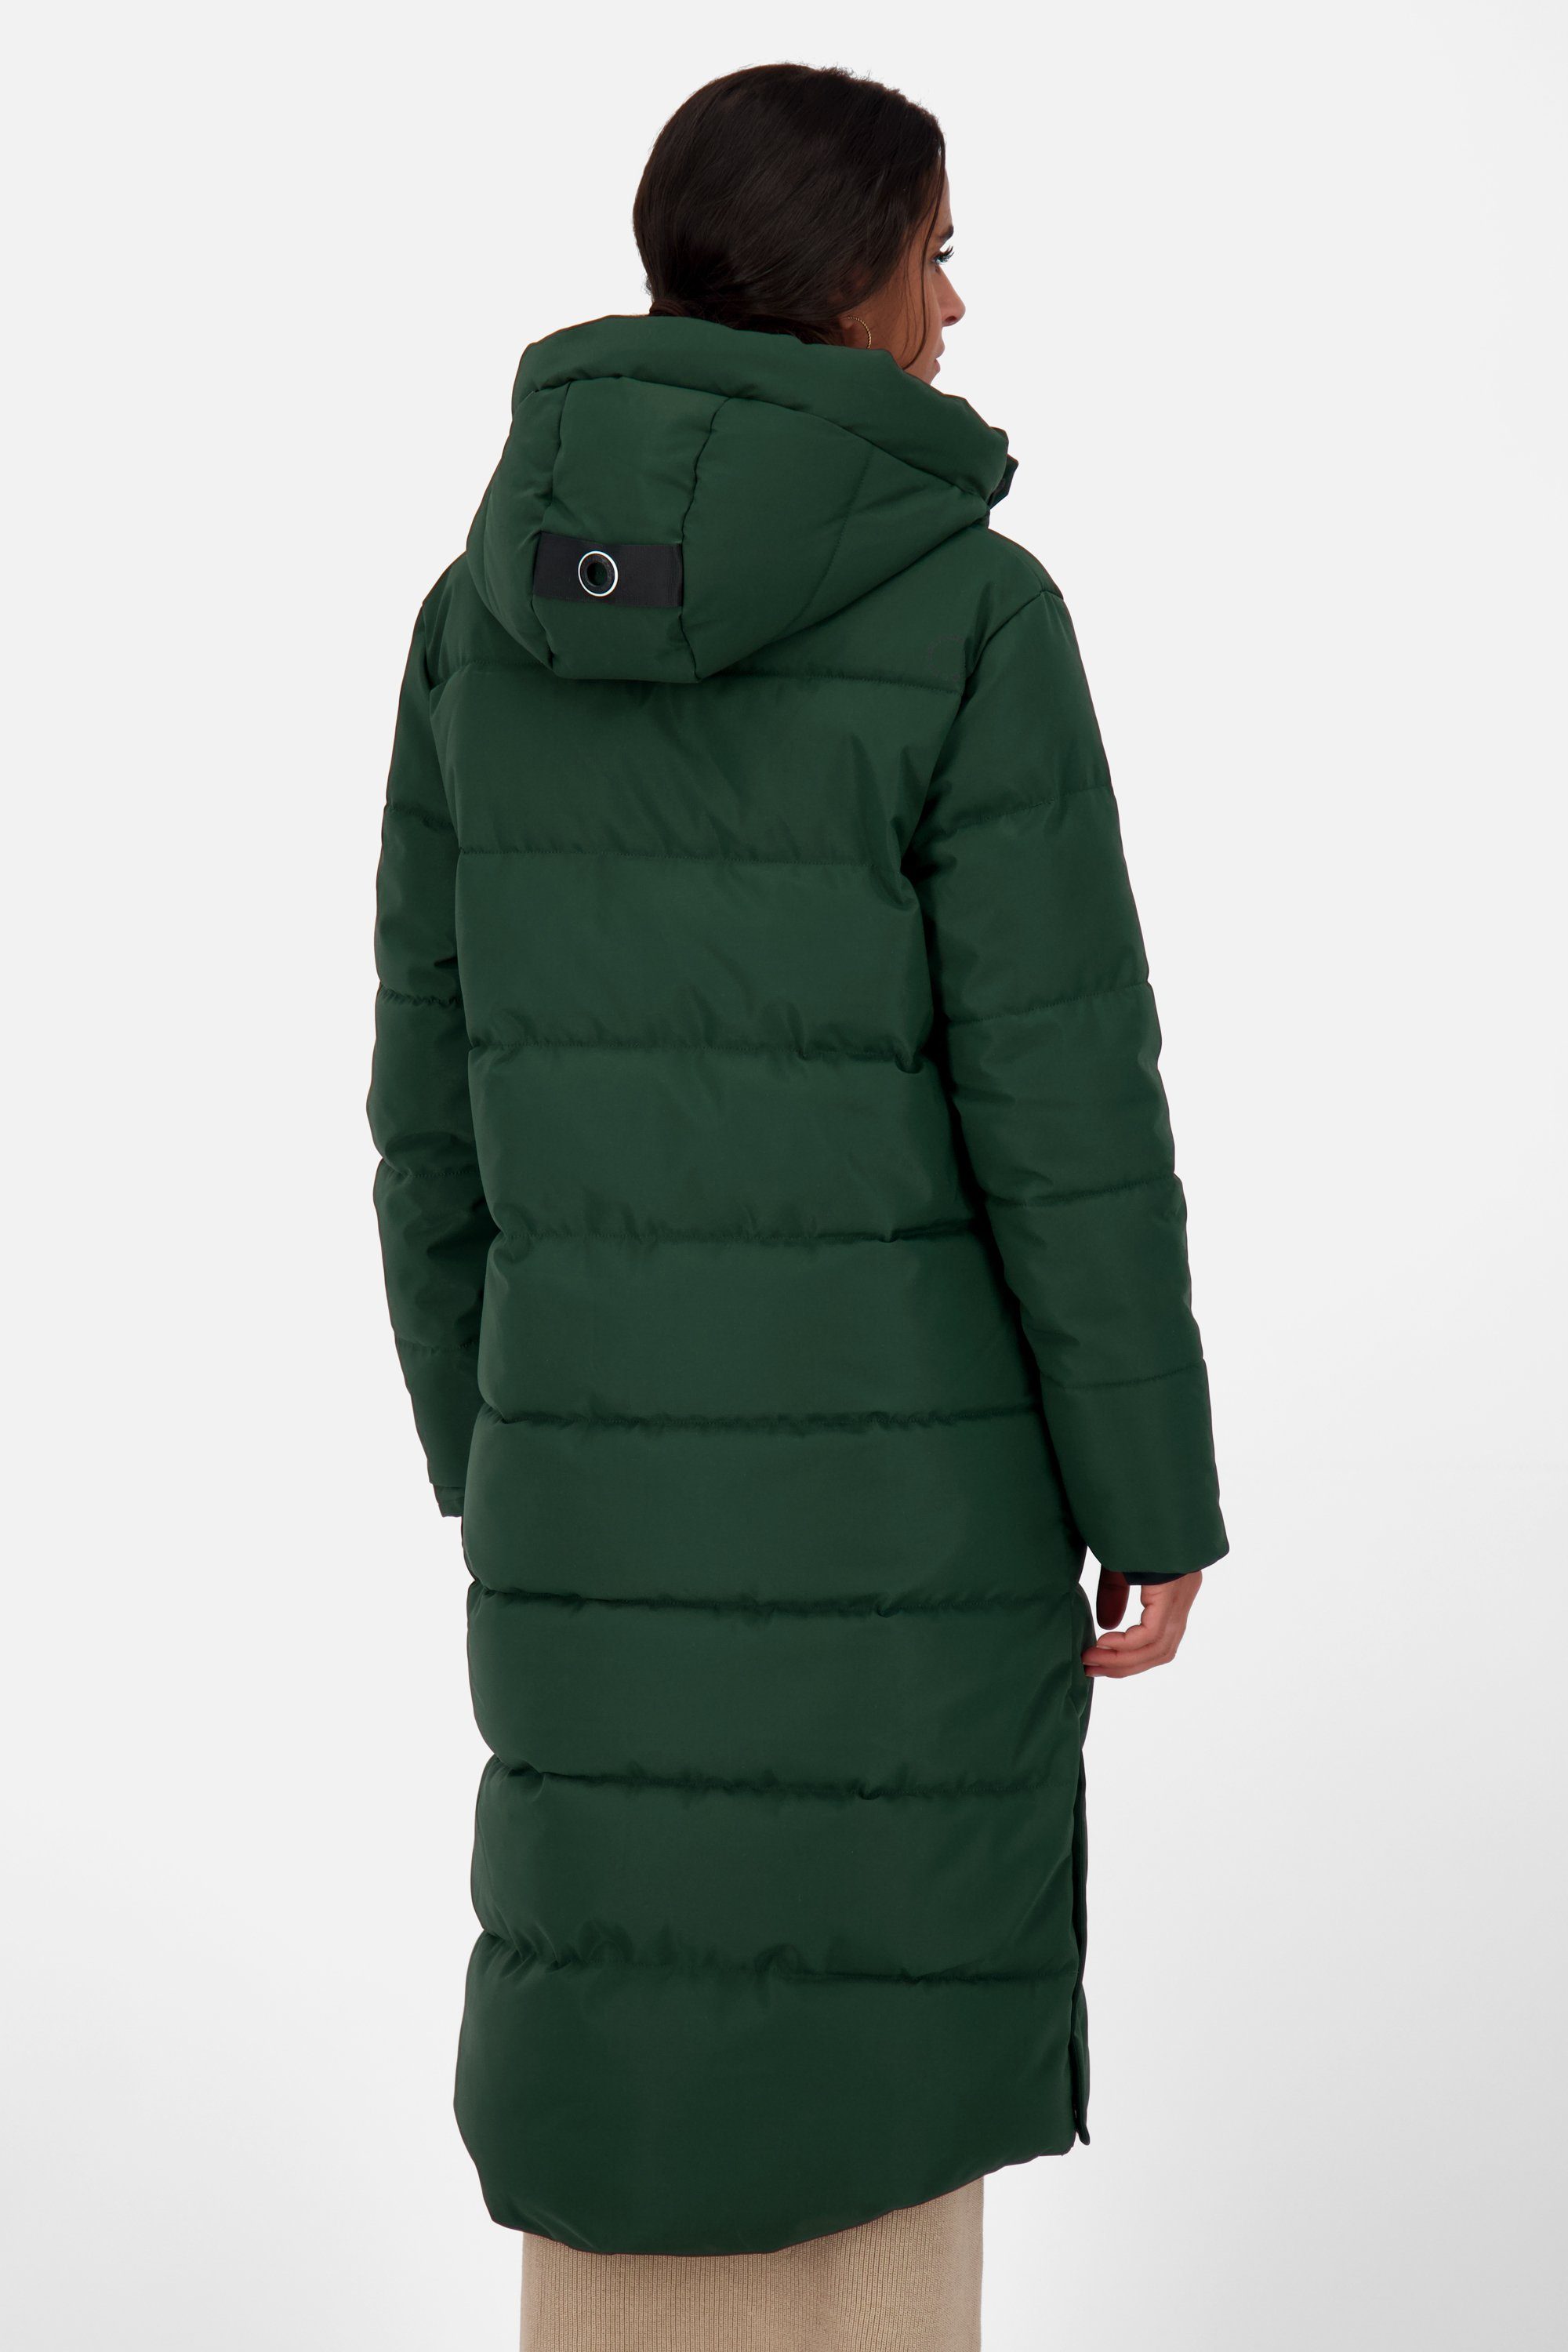 Winterjacke Alife & forest Puffer Coat Damen Kickin A KatiaAK Winterjacke Steppjacke, dark